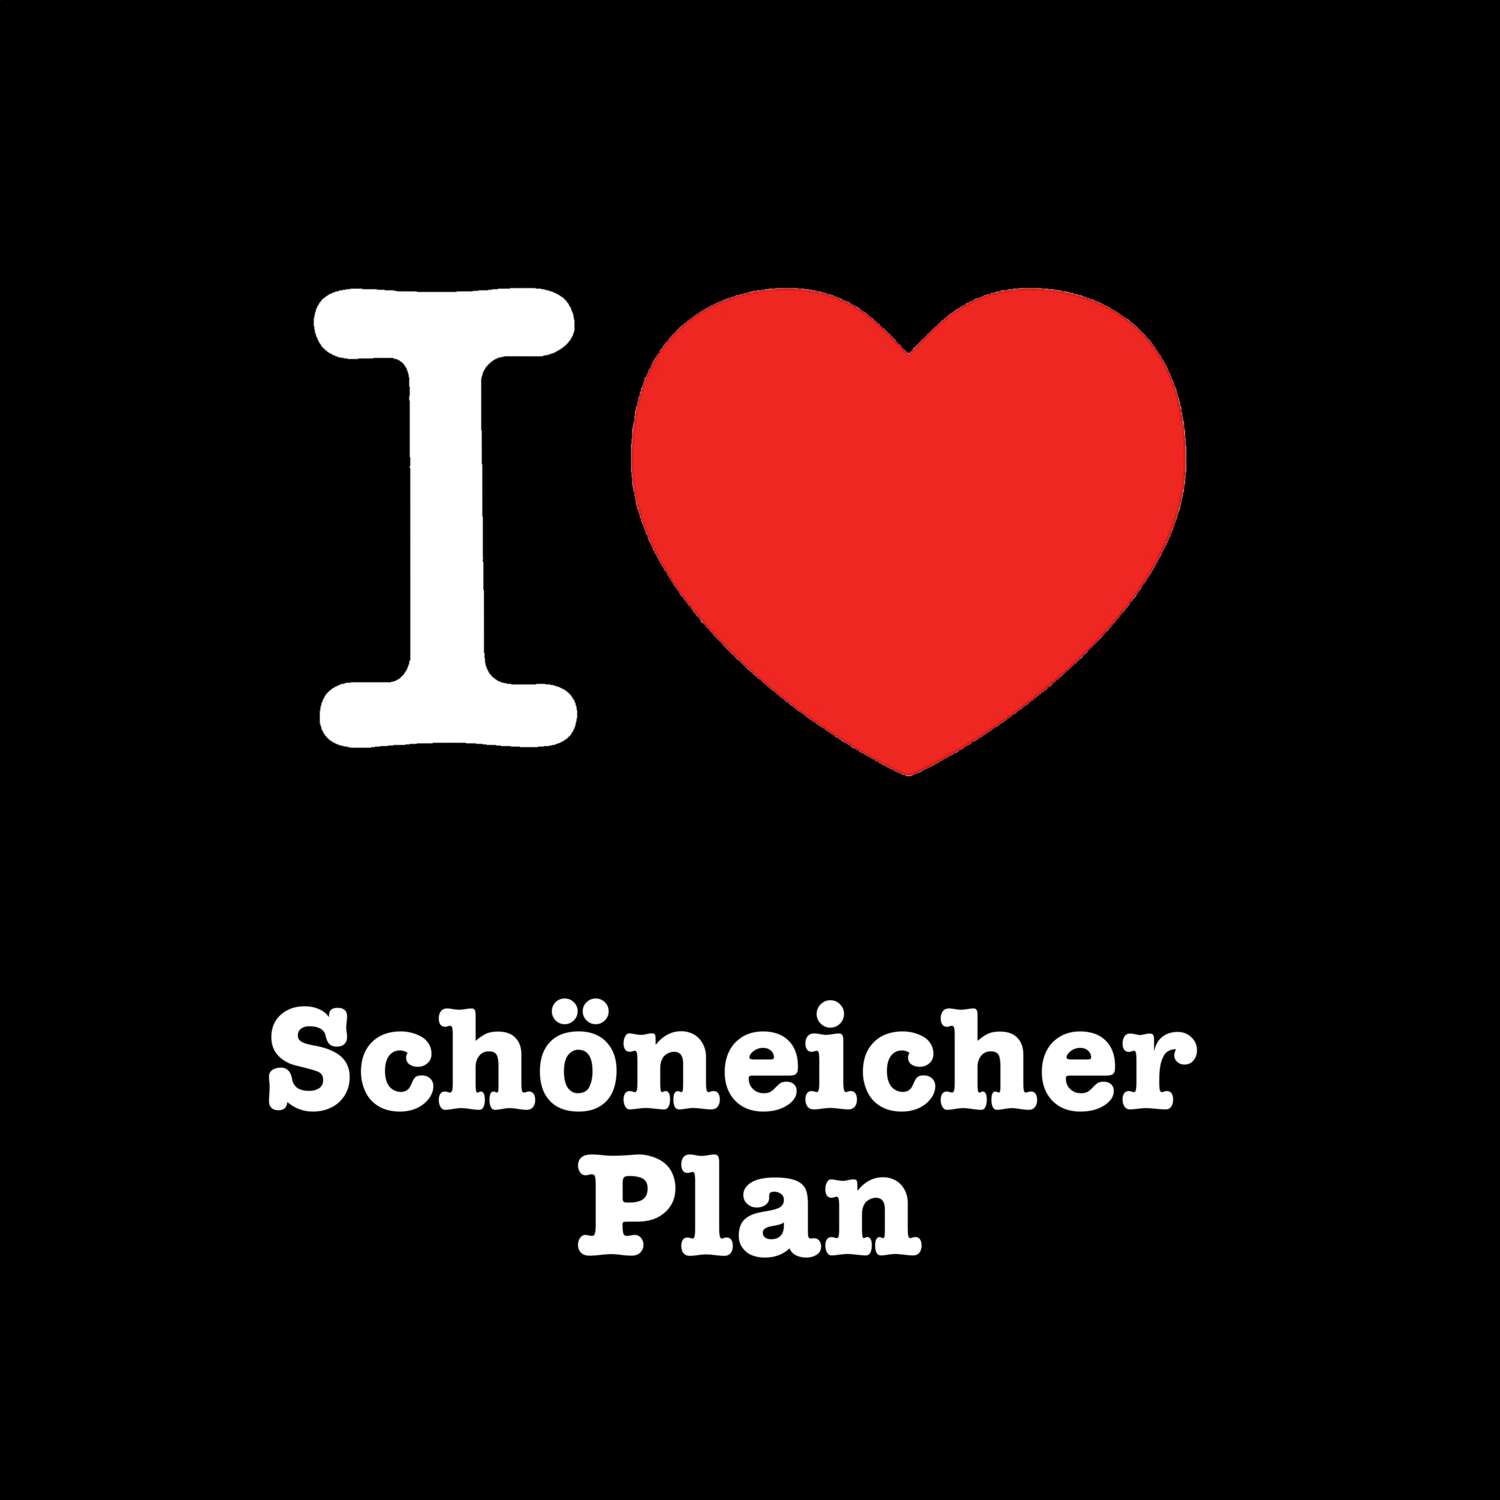 Schöneicher Plan T-Shirt »I love«